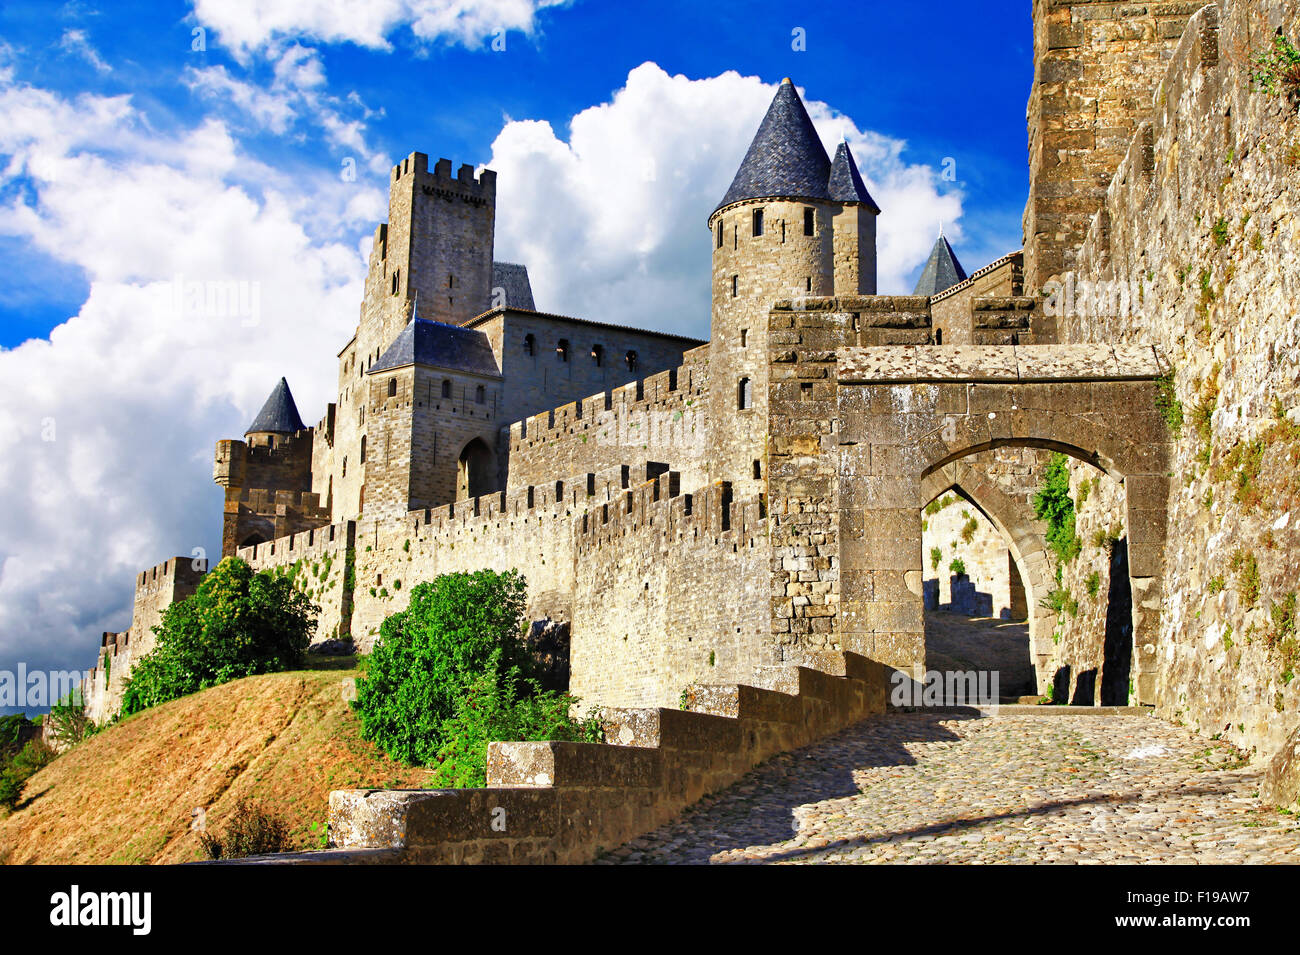 Carcassonne - Mittelalterliche größte Schloss - Festung in Frankreich, beliebte touristische Attraktion Stockfoto